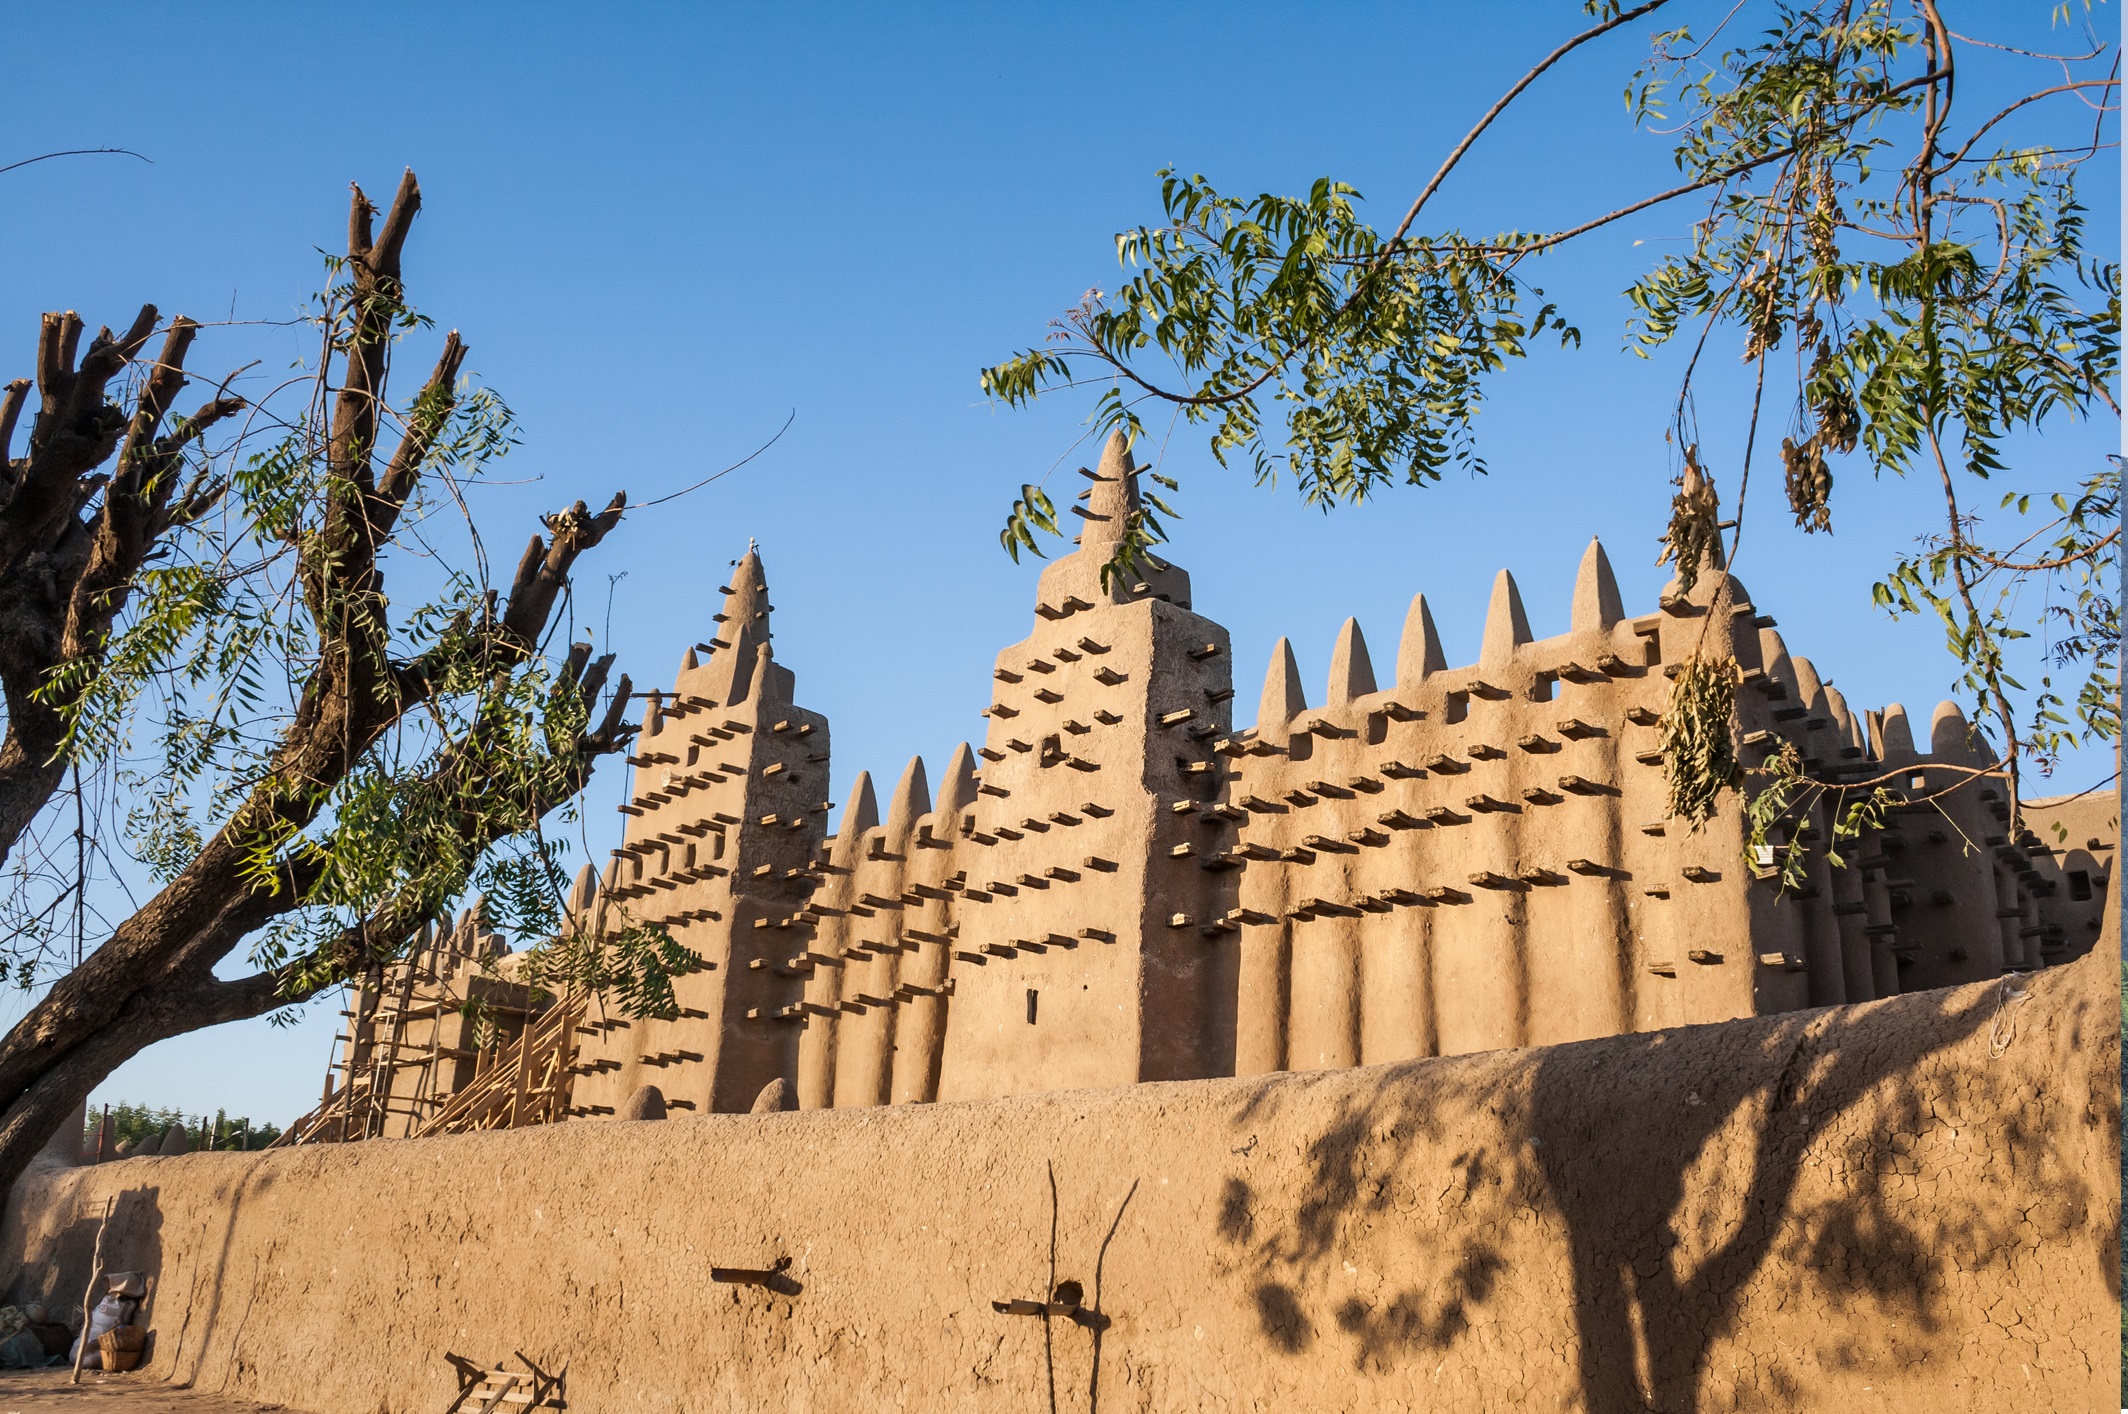 Голямата джамия в Джене (Мали) – в най-старият град в субсахарска Африка – Джене, ще намерите монументална джамия, построена от кирпич от догоните. Това са африкански хора, които използват кал така, както древните римляни използвали мрамор. Всяка пролет местните зидари поддържат джамията чрез полагане на нов слой кал.